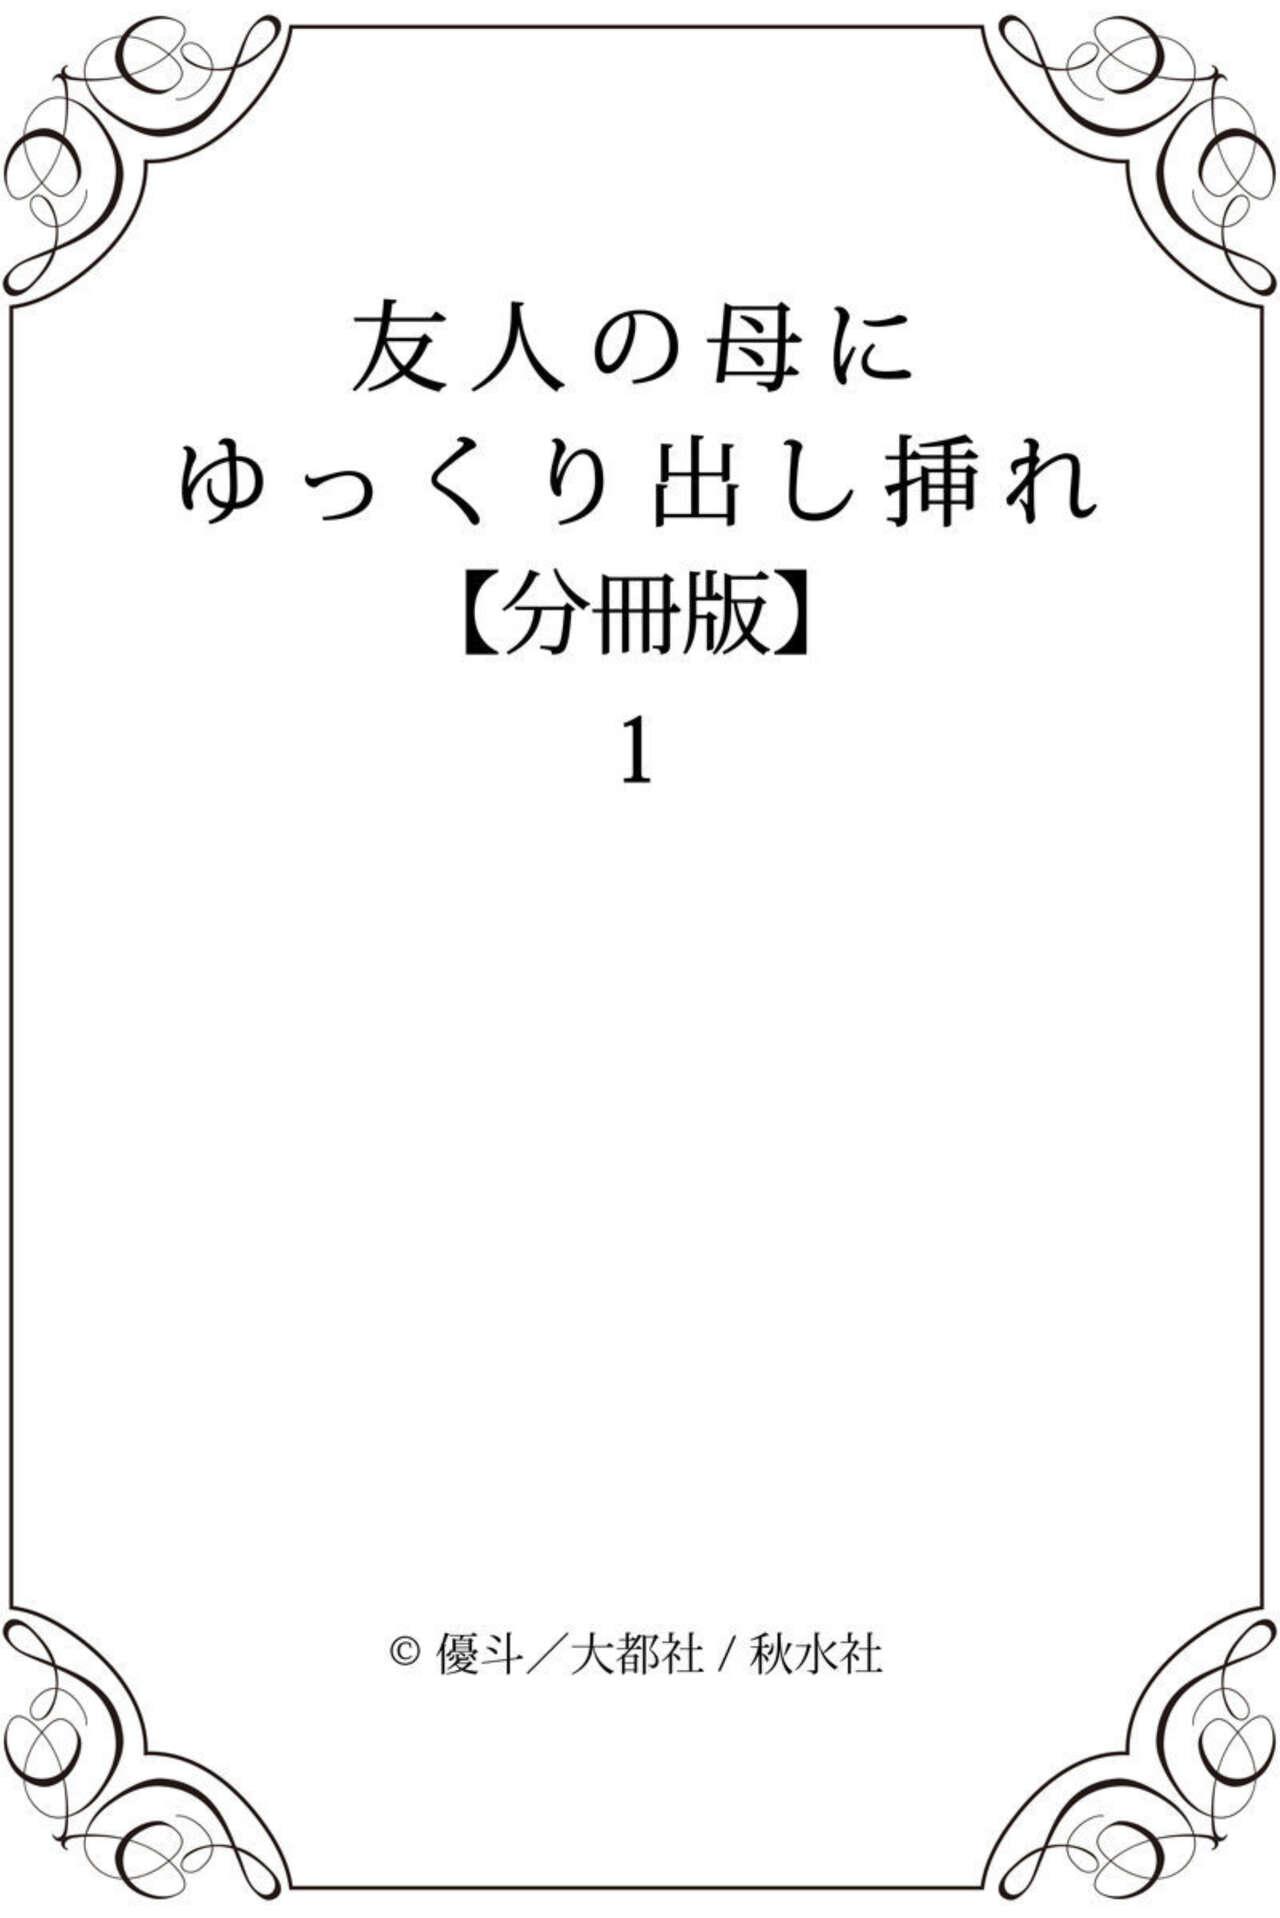 Bear Yūjin no Haha ni Yukkuri Dashi re 【 Bunsatsuban 】1 Creampies - Page 19